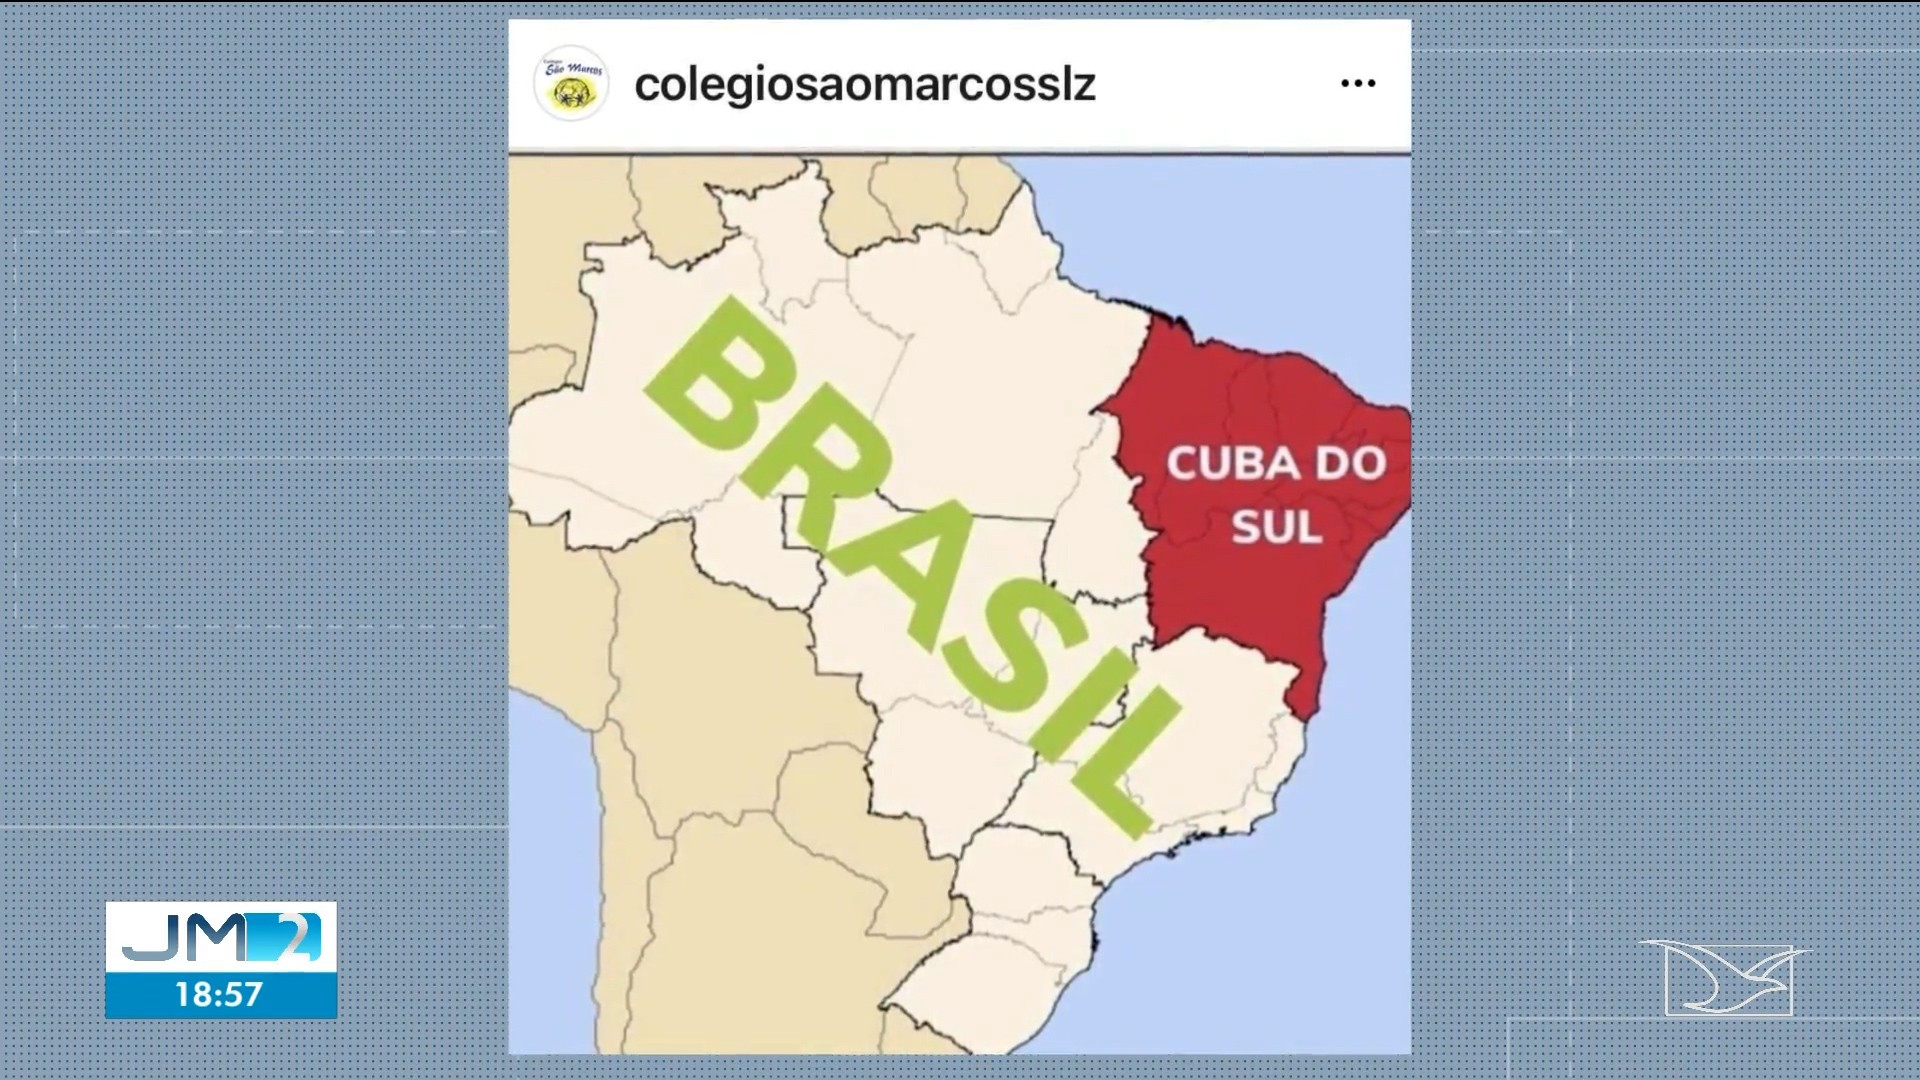 Escola particular de São Luís é notificada pelo Procon-MA após publicação xenofóbica em rede social